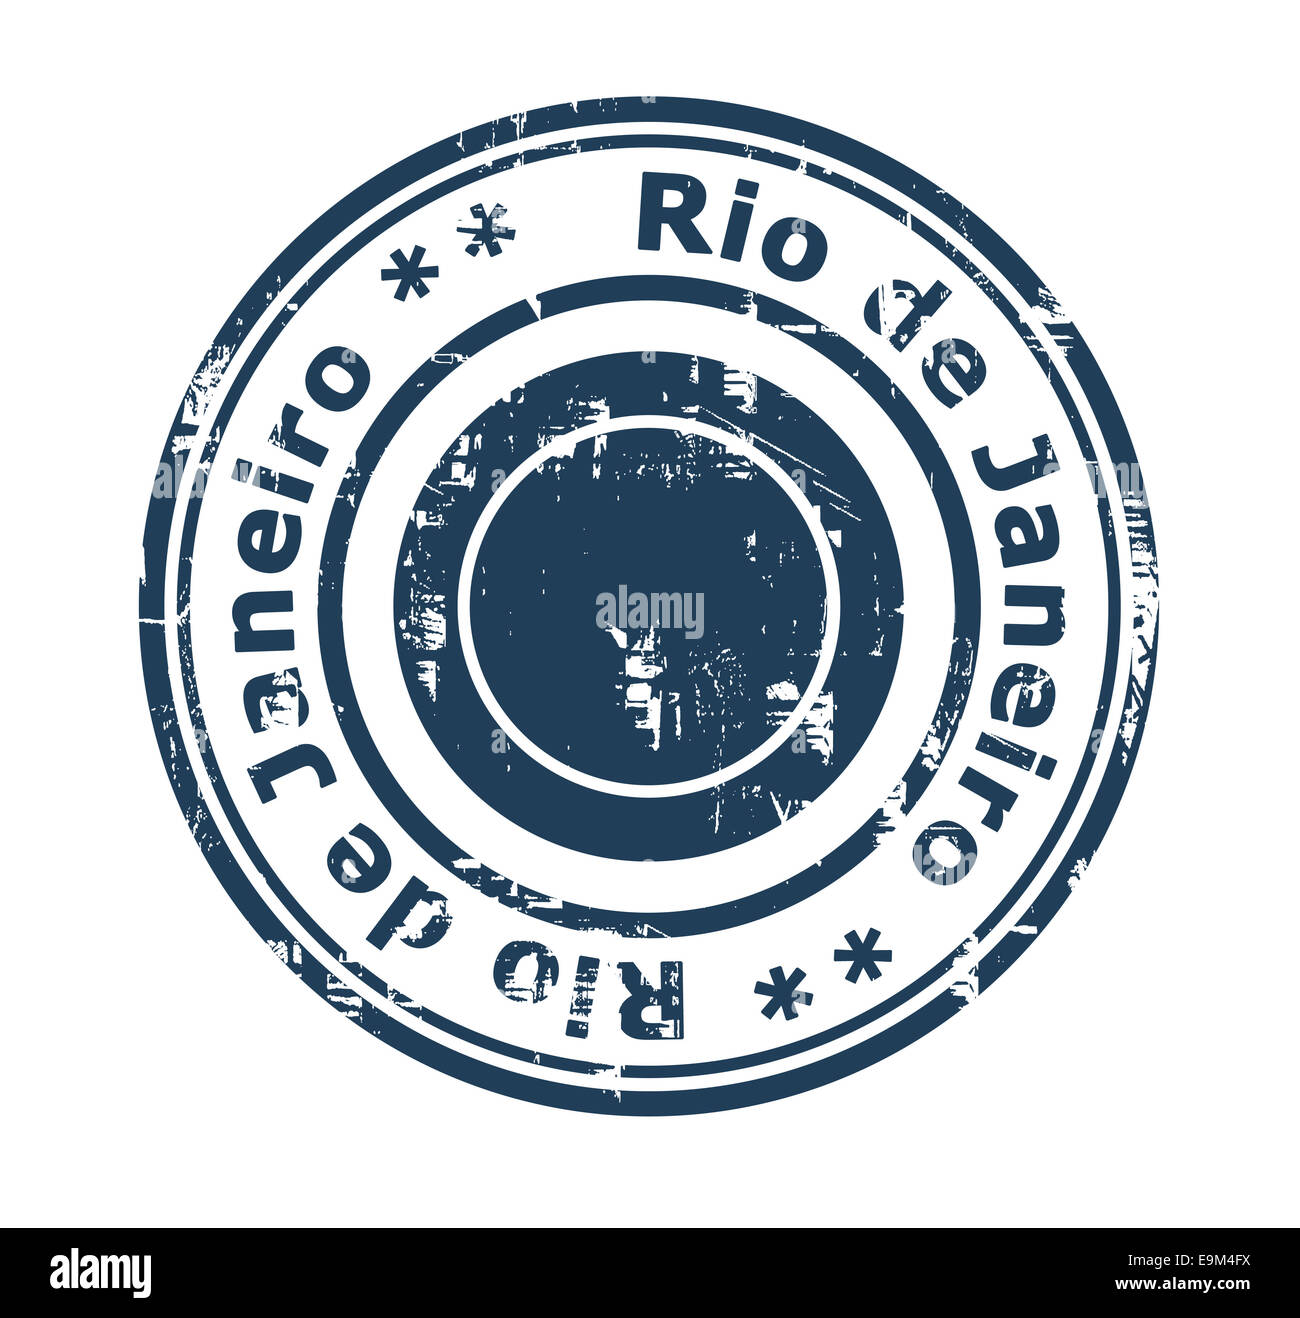 Grunge-Stempel von der Stadt Rio De Janeiro in Brasilien isoliert auf einem weißen Hintergrund. Stockfoto